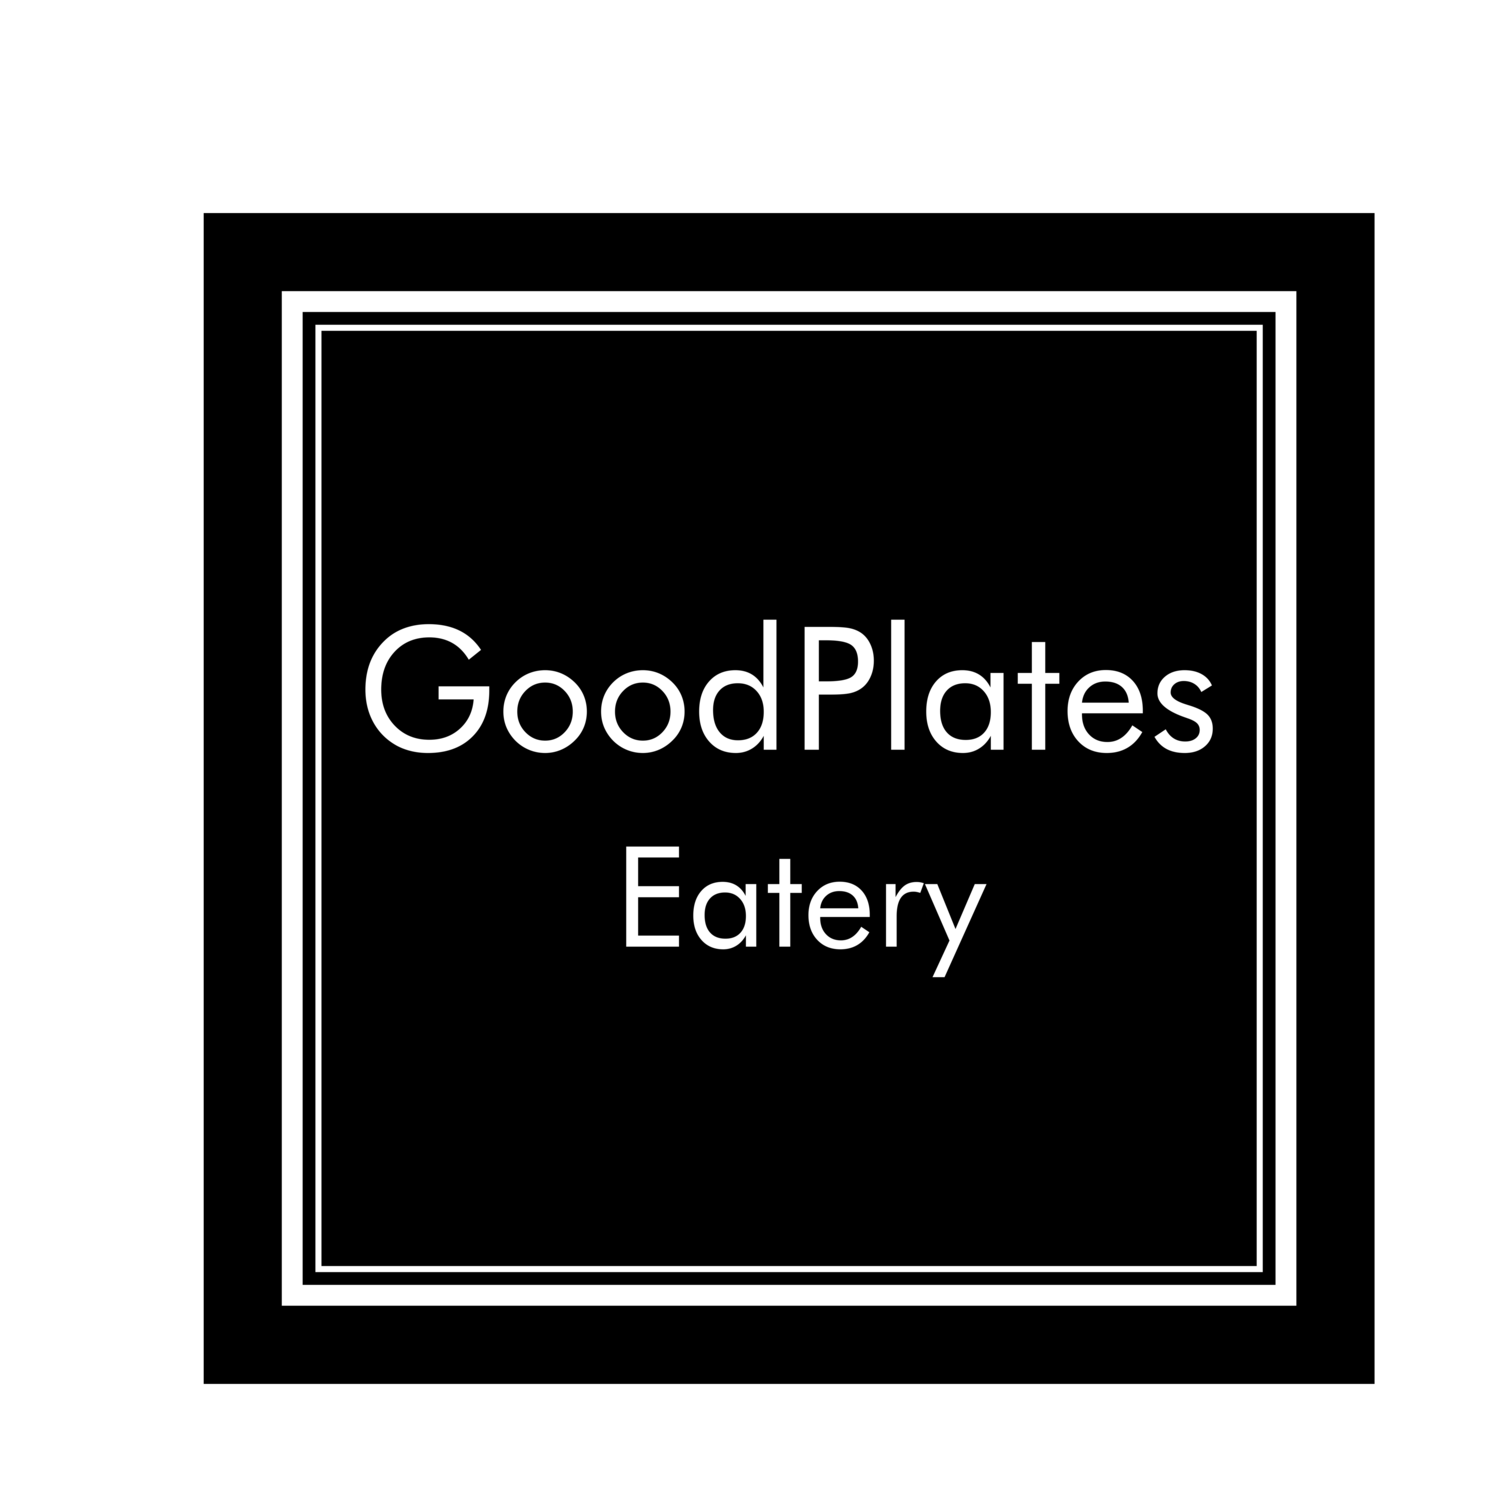 Good Plates Eatery